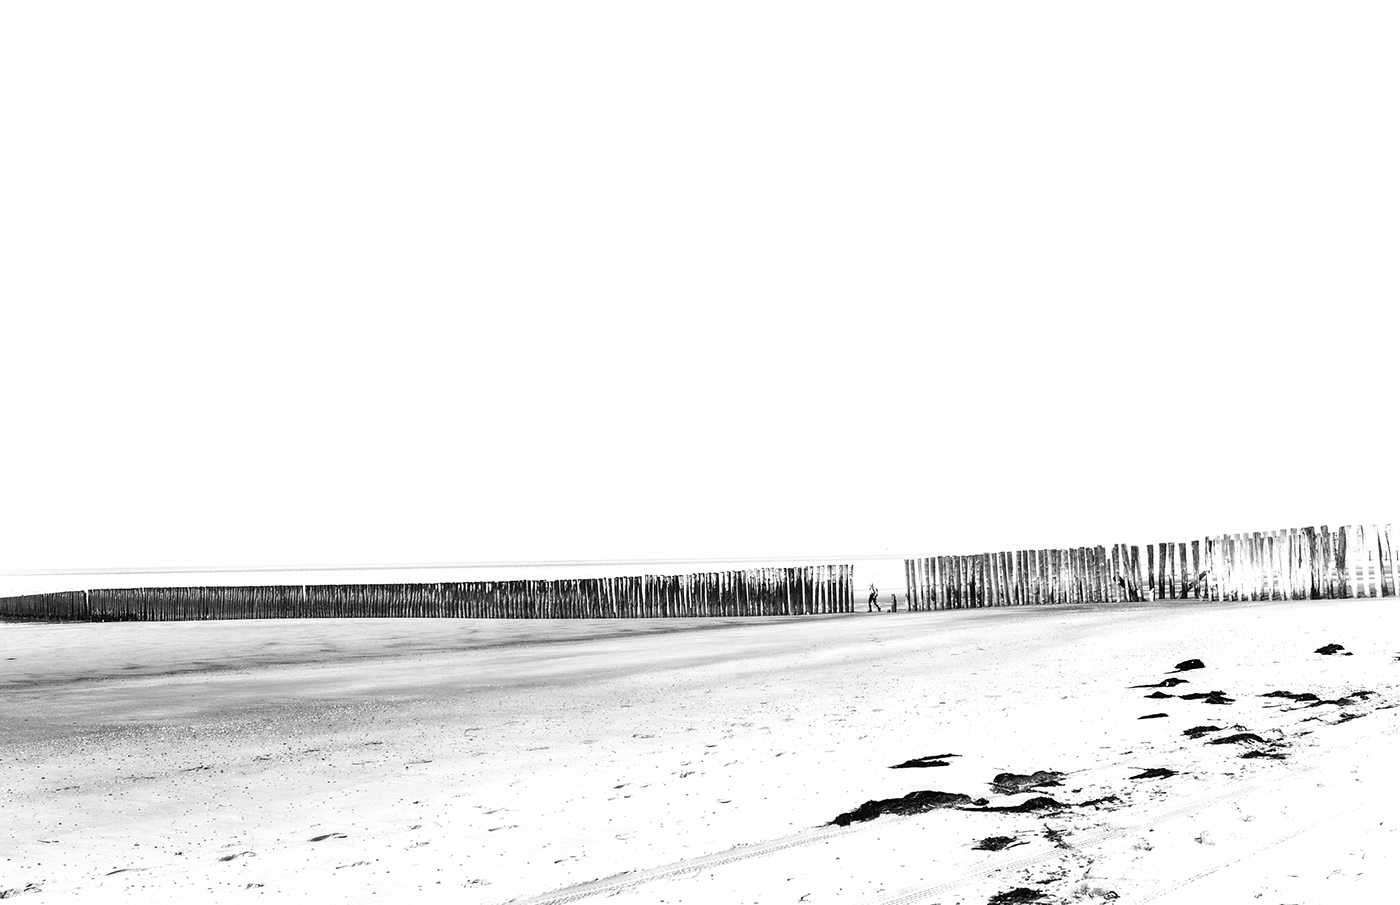 breakwater wellenbrecher Schwarzweiß Meer Strand minimalismus Minimalism